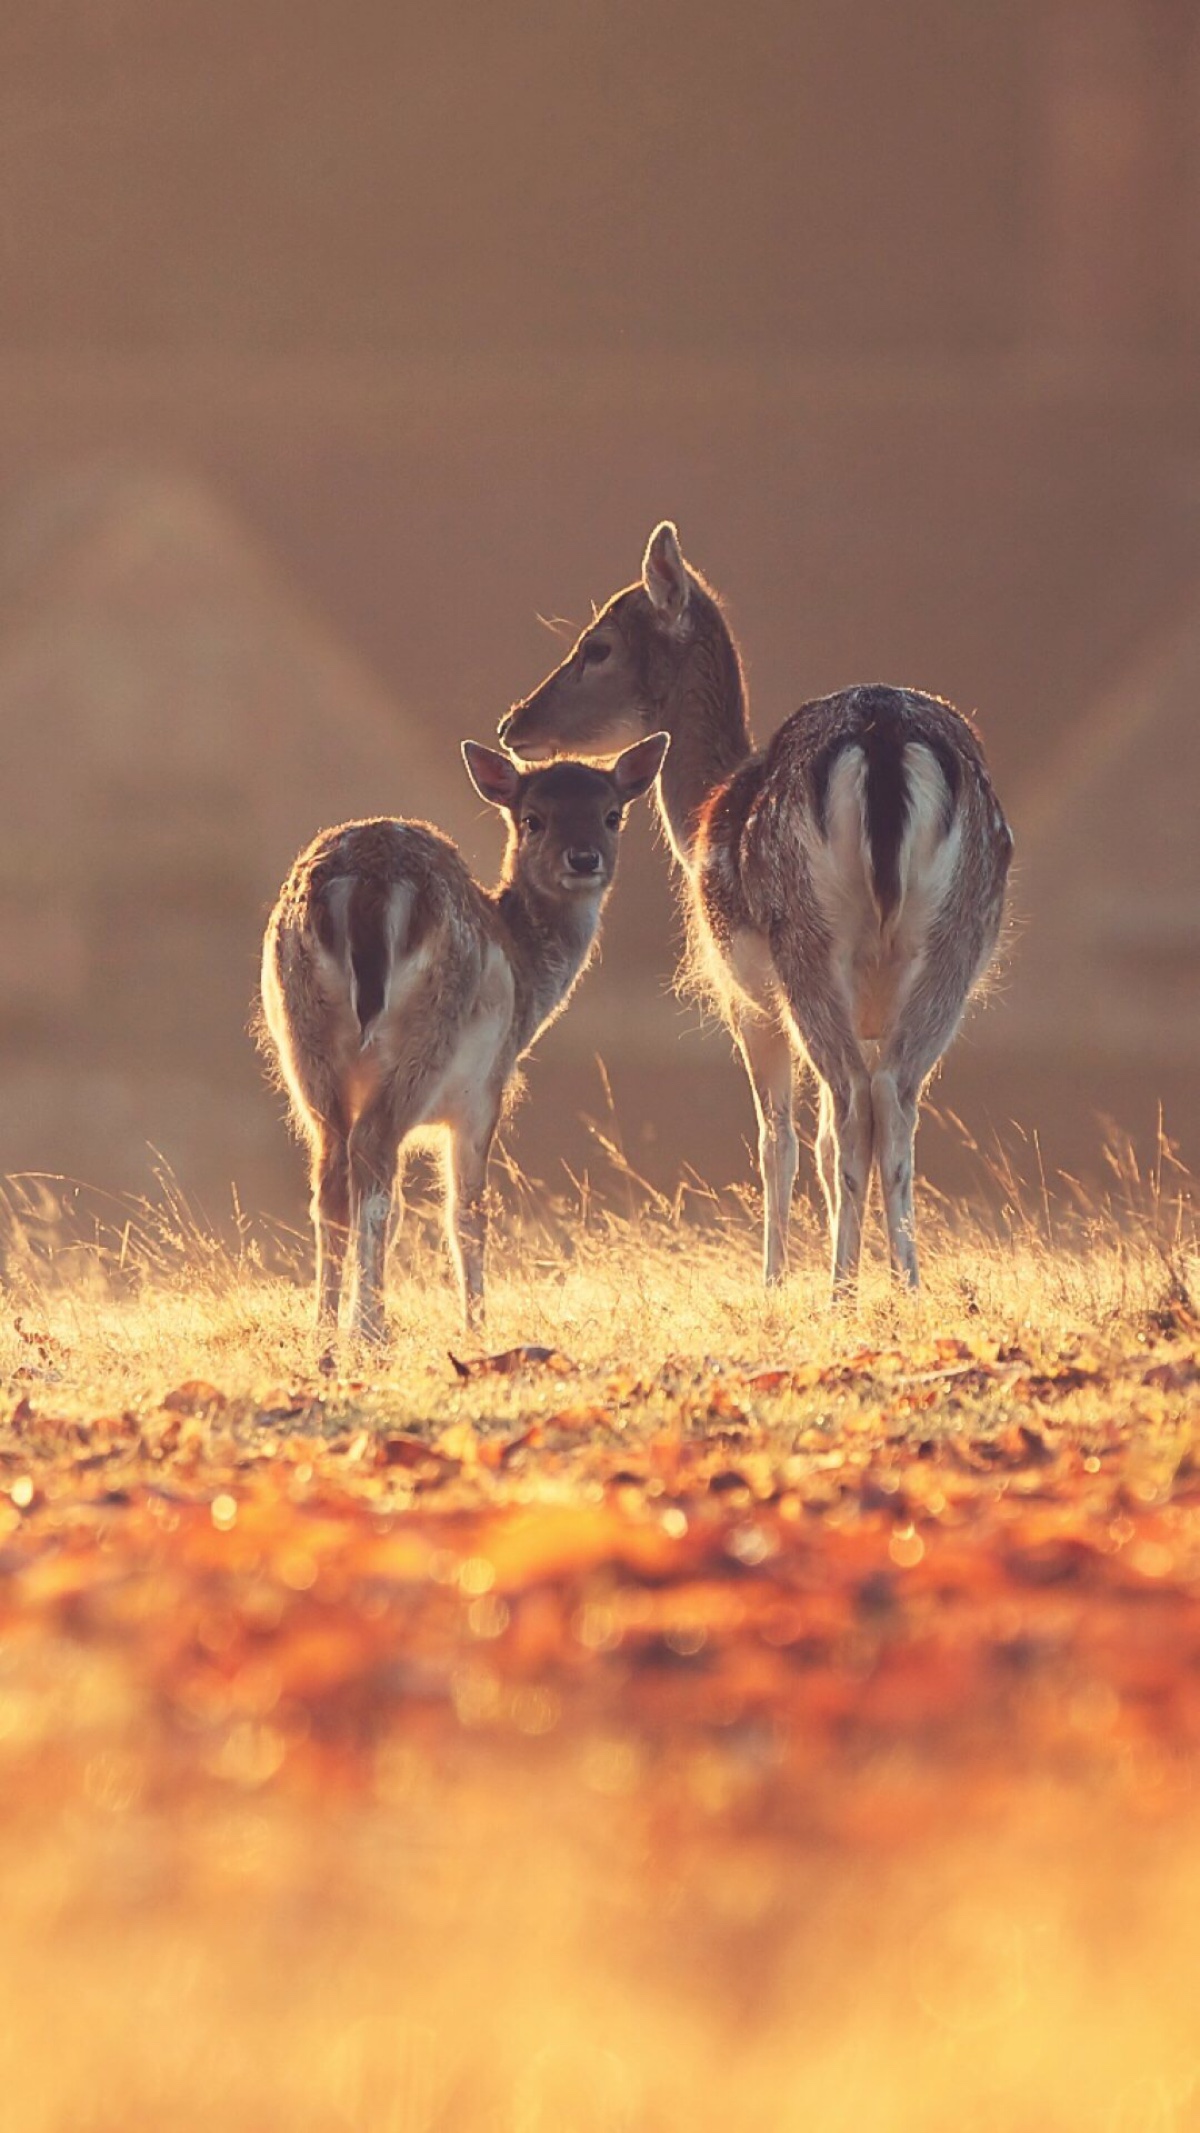 两只鹿的图片唯美图片